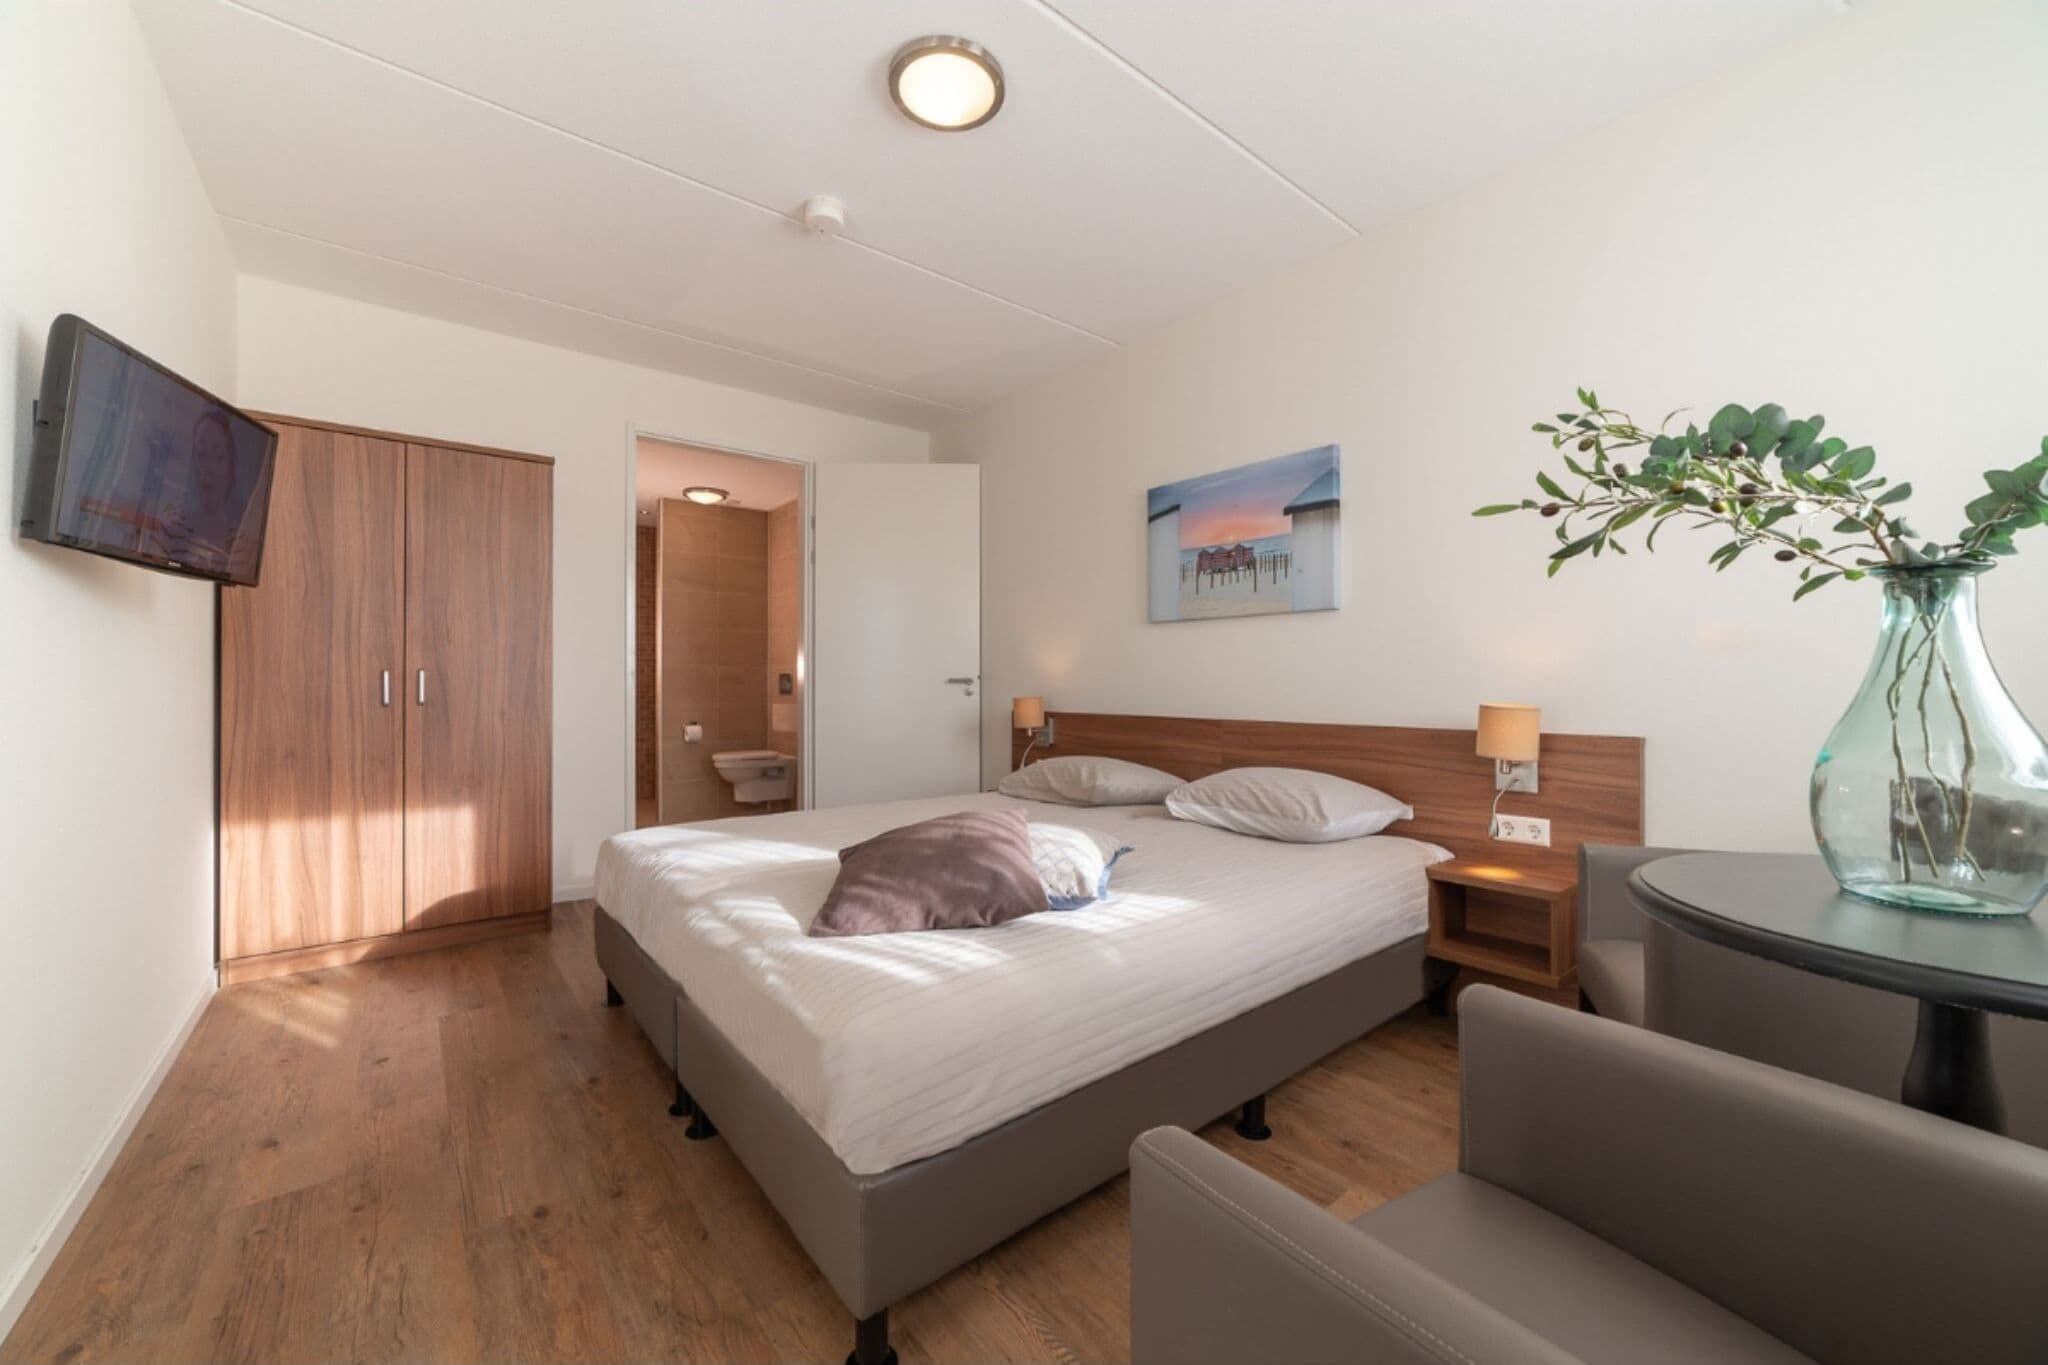 Vakantiehuis met bubbelbad en sauna in rustige omgeving in Zeeland